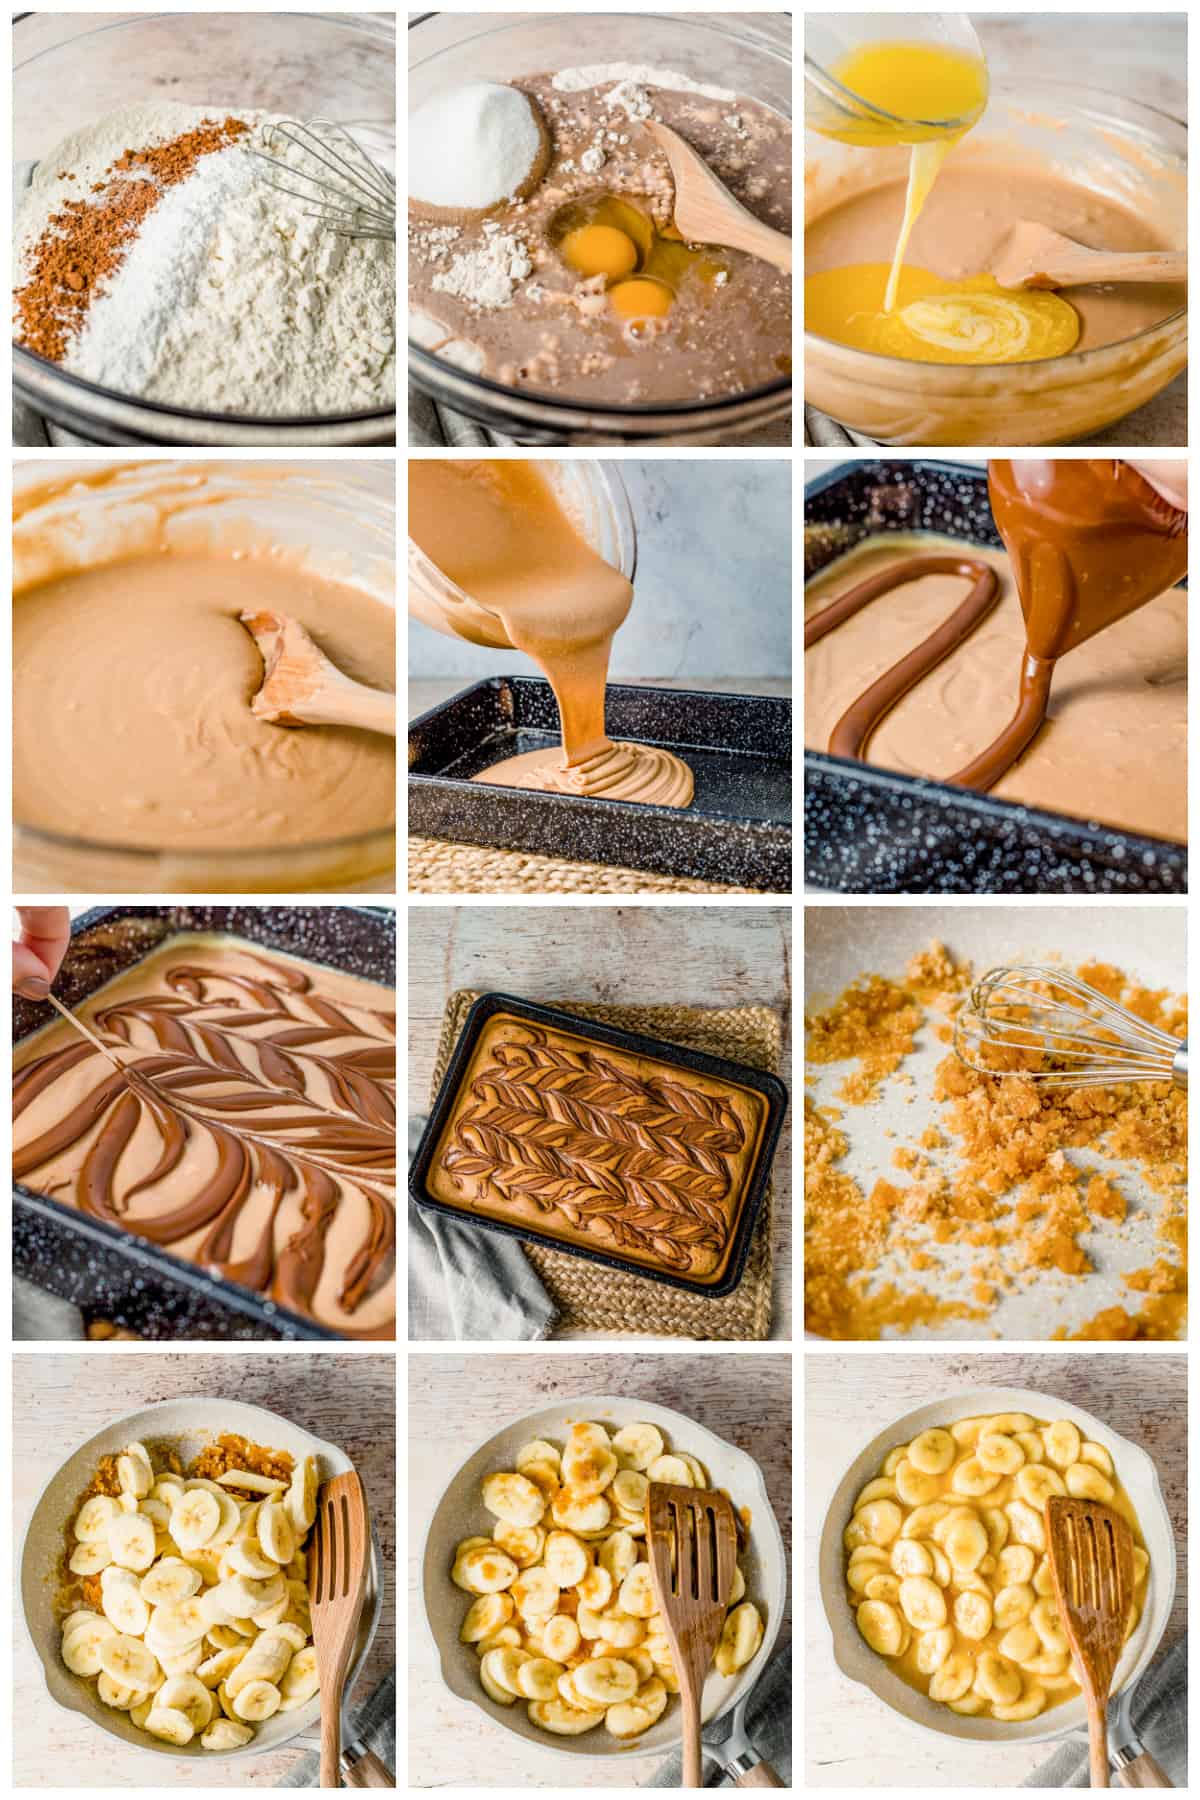 Step by step photos on how to make a Chocolate Hazelnut Cake.